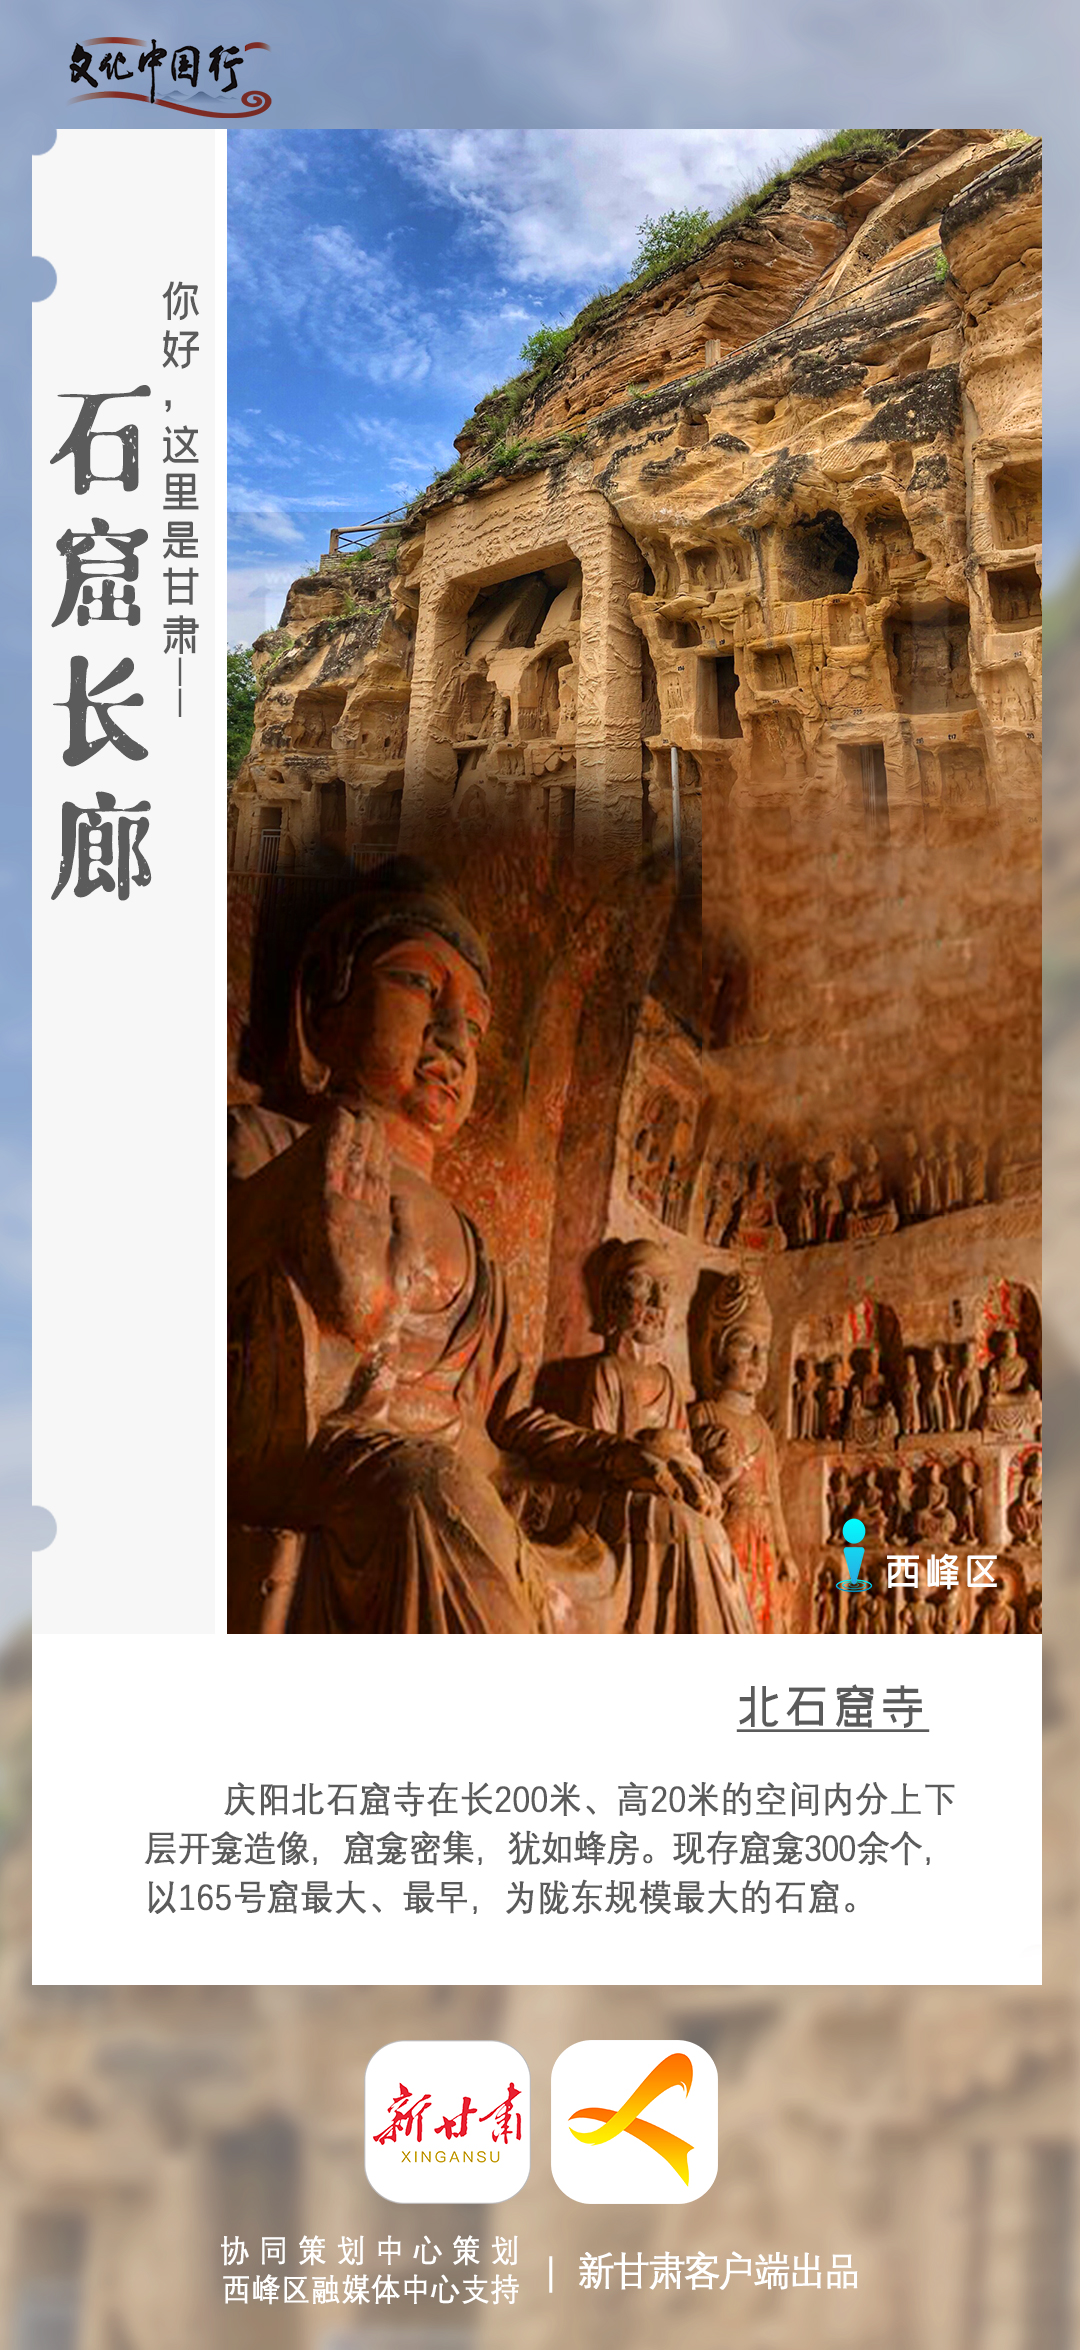 【文化中国行】你好,这里是甘肃美轮美奂的石窟长廊